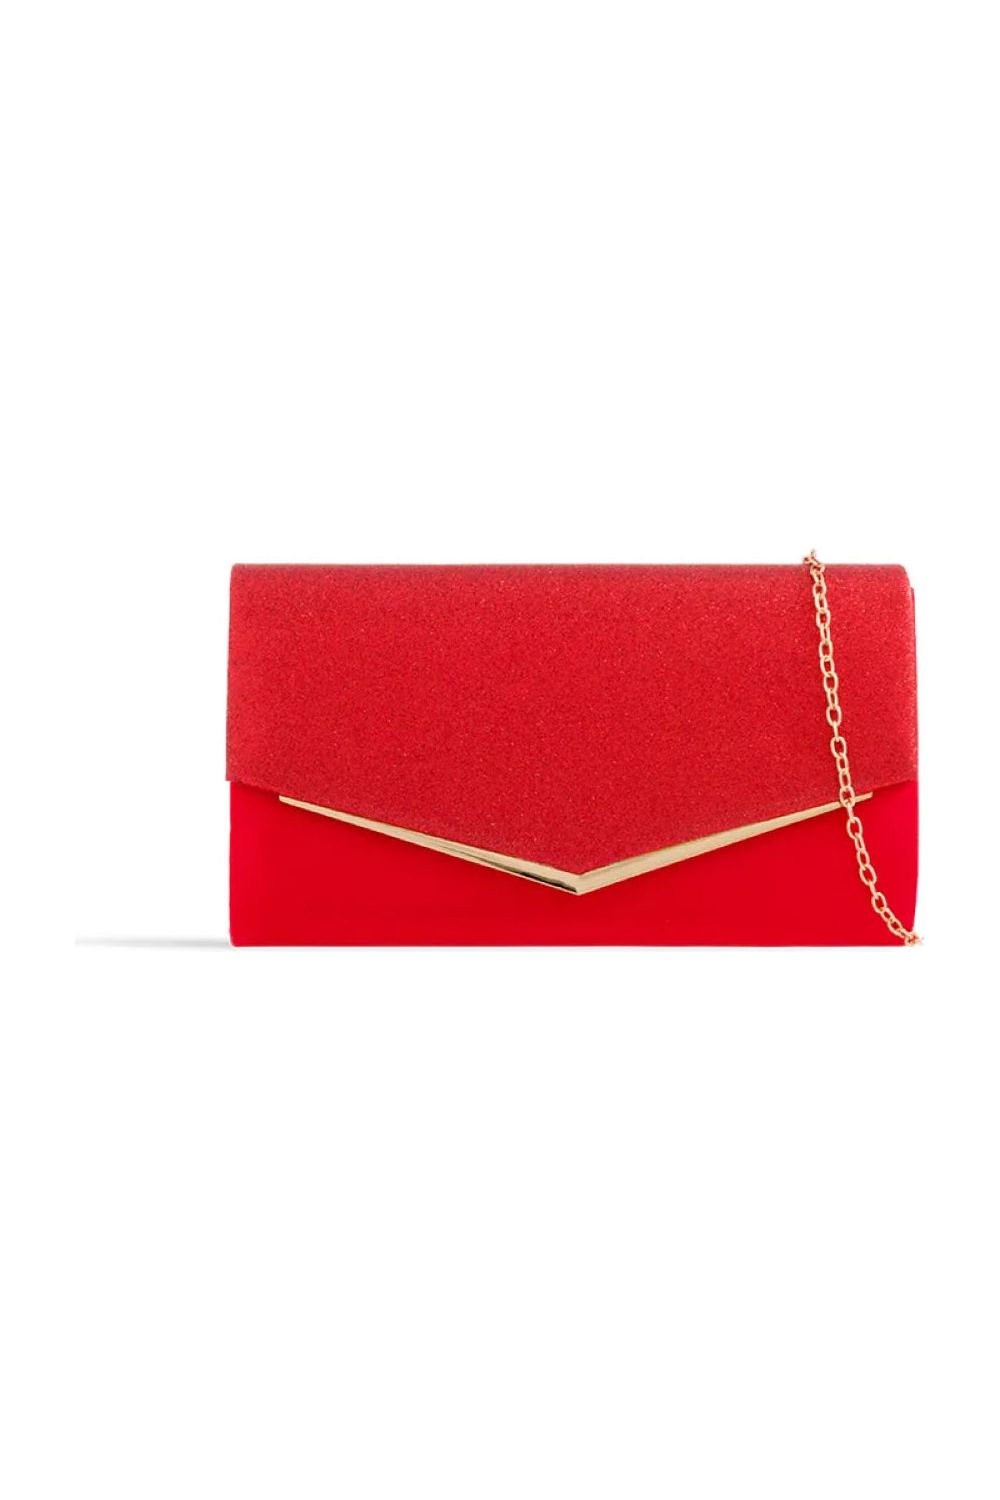 Red Glitter Envelope Clutch Bag ALH2348